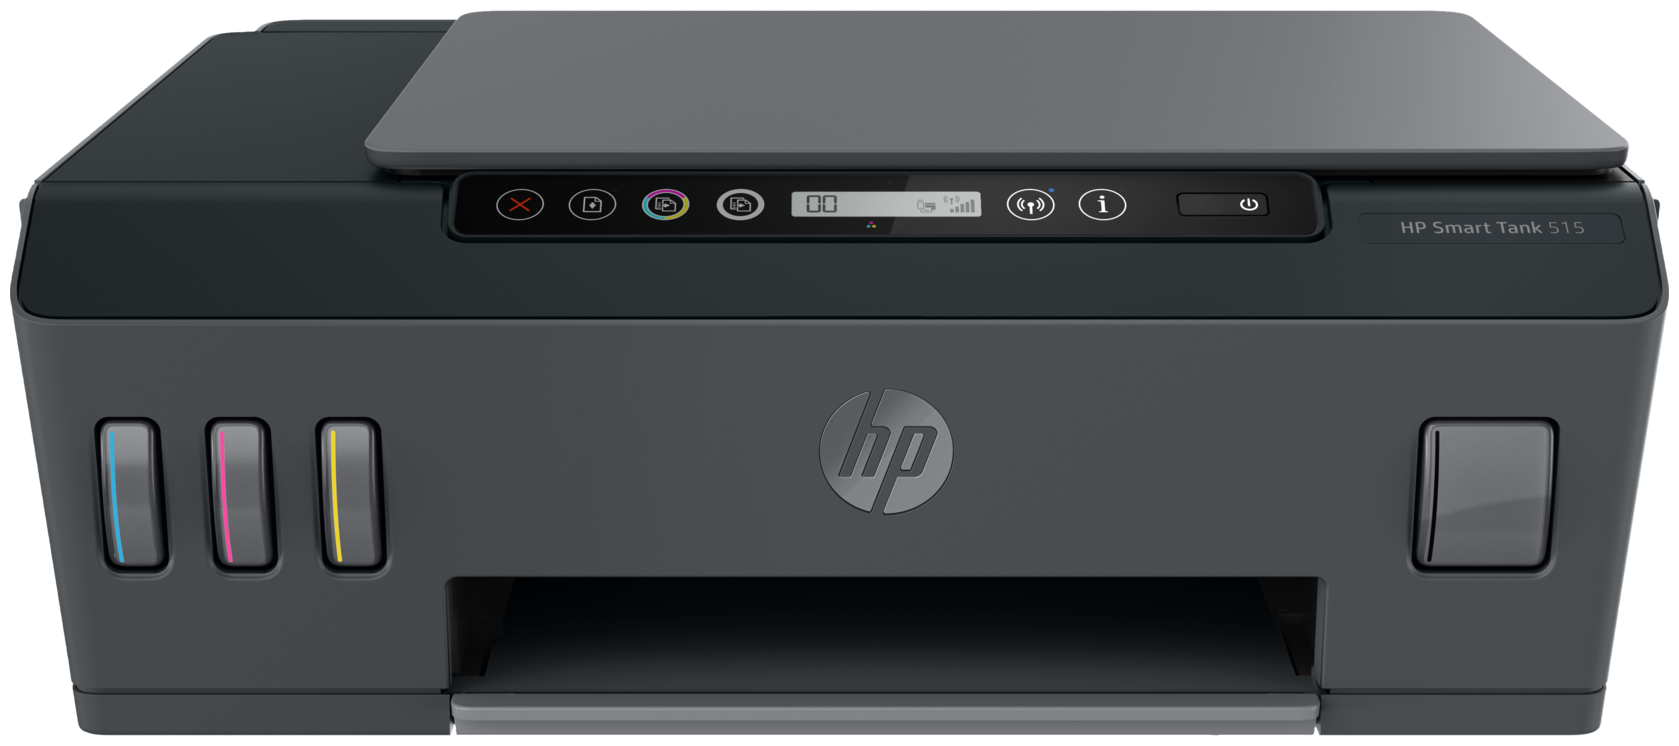 Принтеры и МФУ HP SmartTank 515